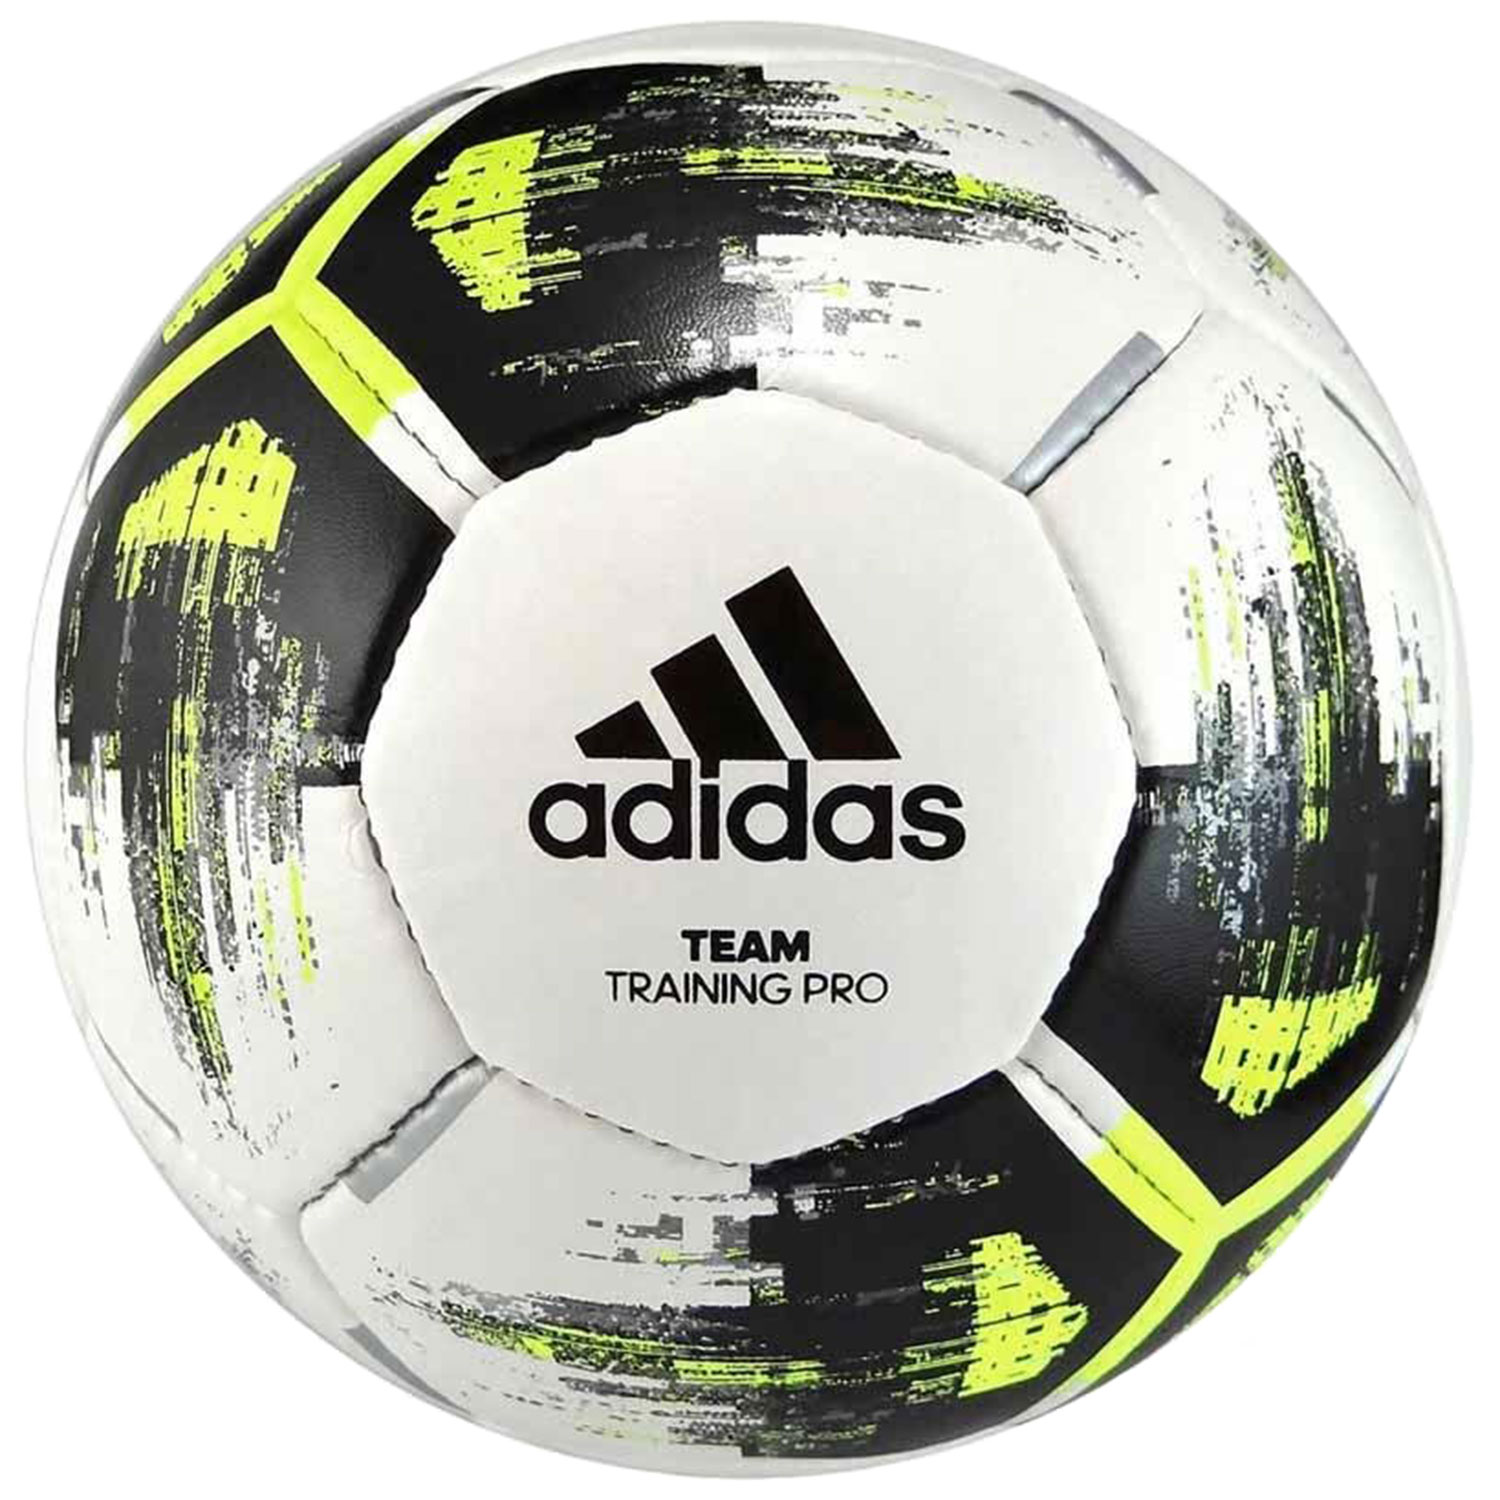 Adidas Team Training Pro Футбольные мячи CZ2233 купите в интернет магазине  Professionalsport в Москве с доставкой по РФ